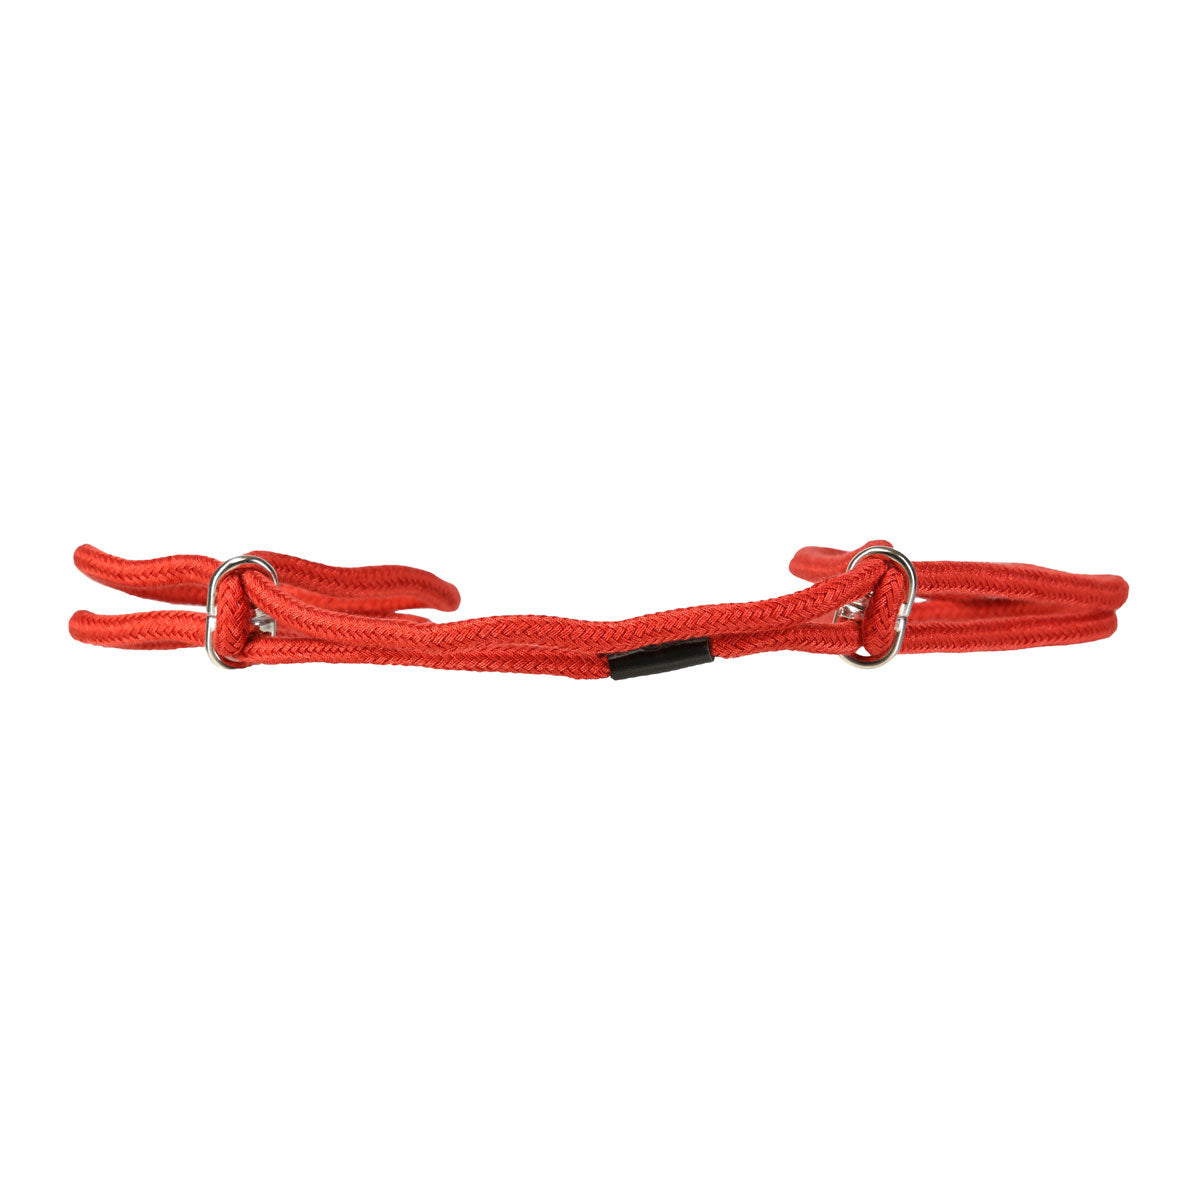 Cotton Cuffs 11.8” Wrist or Ankle Cuffs – Red